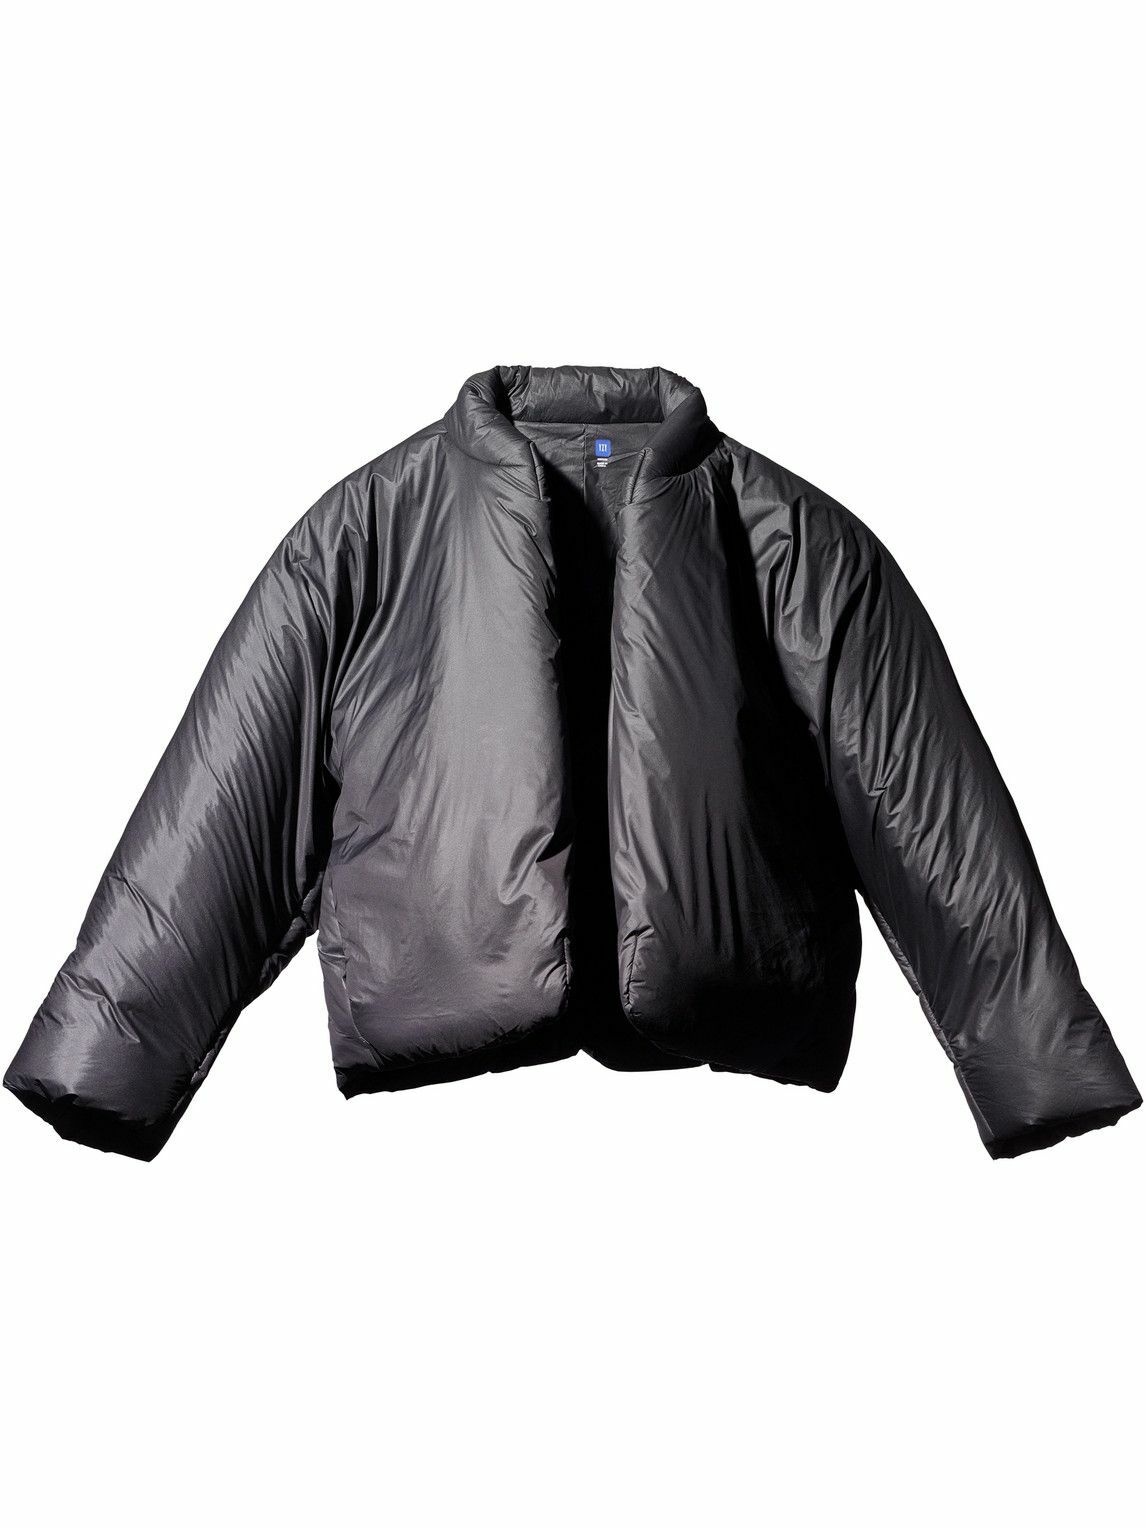 正規品限定SALE YEEZY season3 GAP bomber jacketの通販 by LOL's shop ...